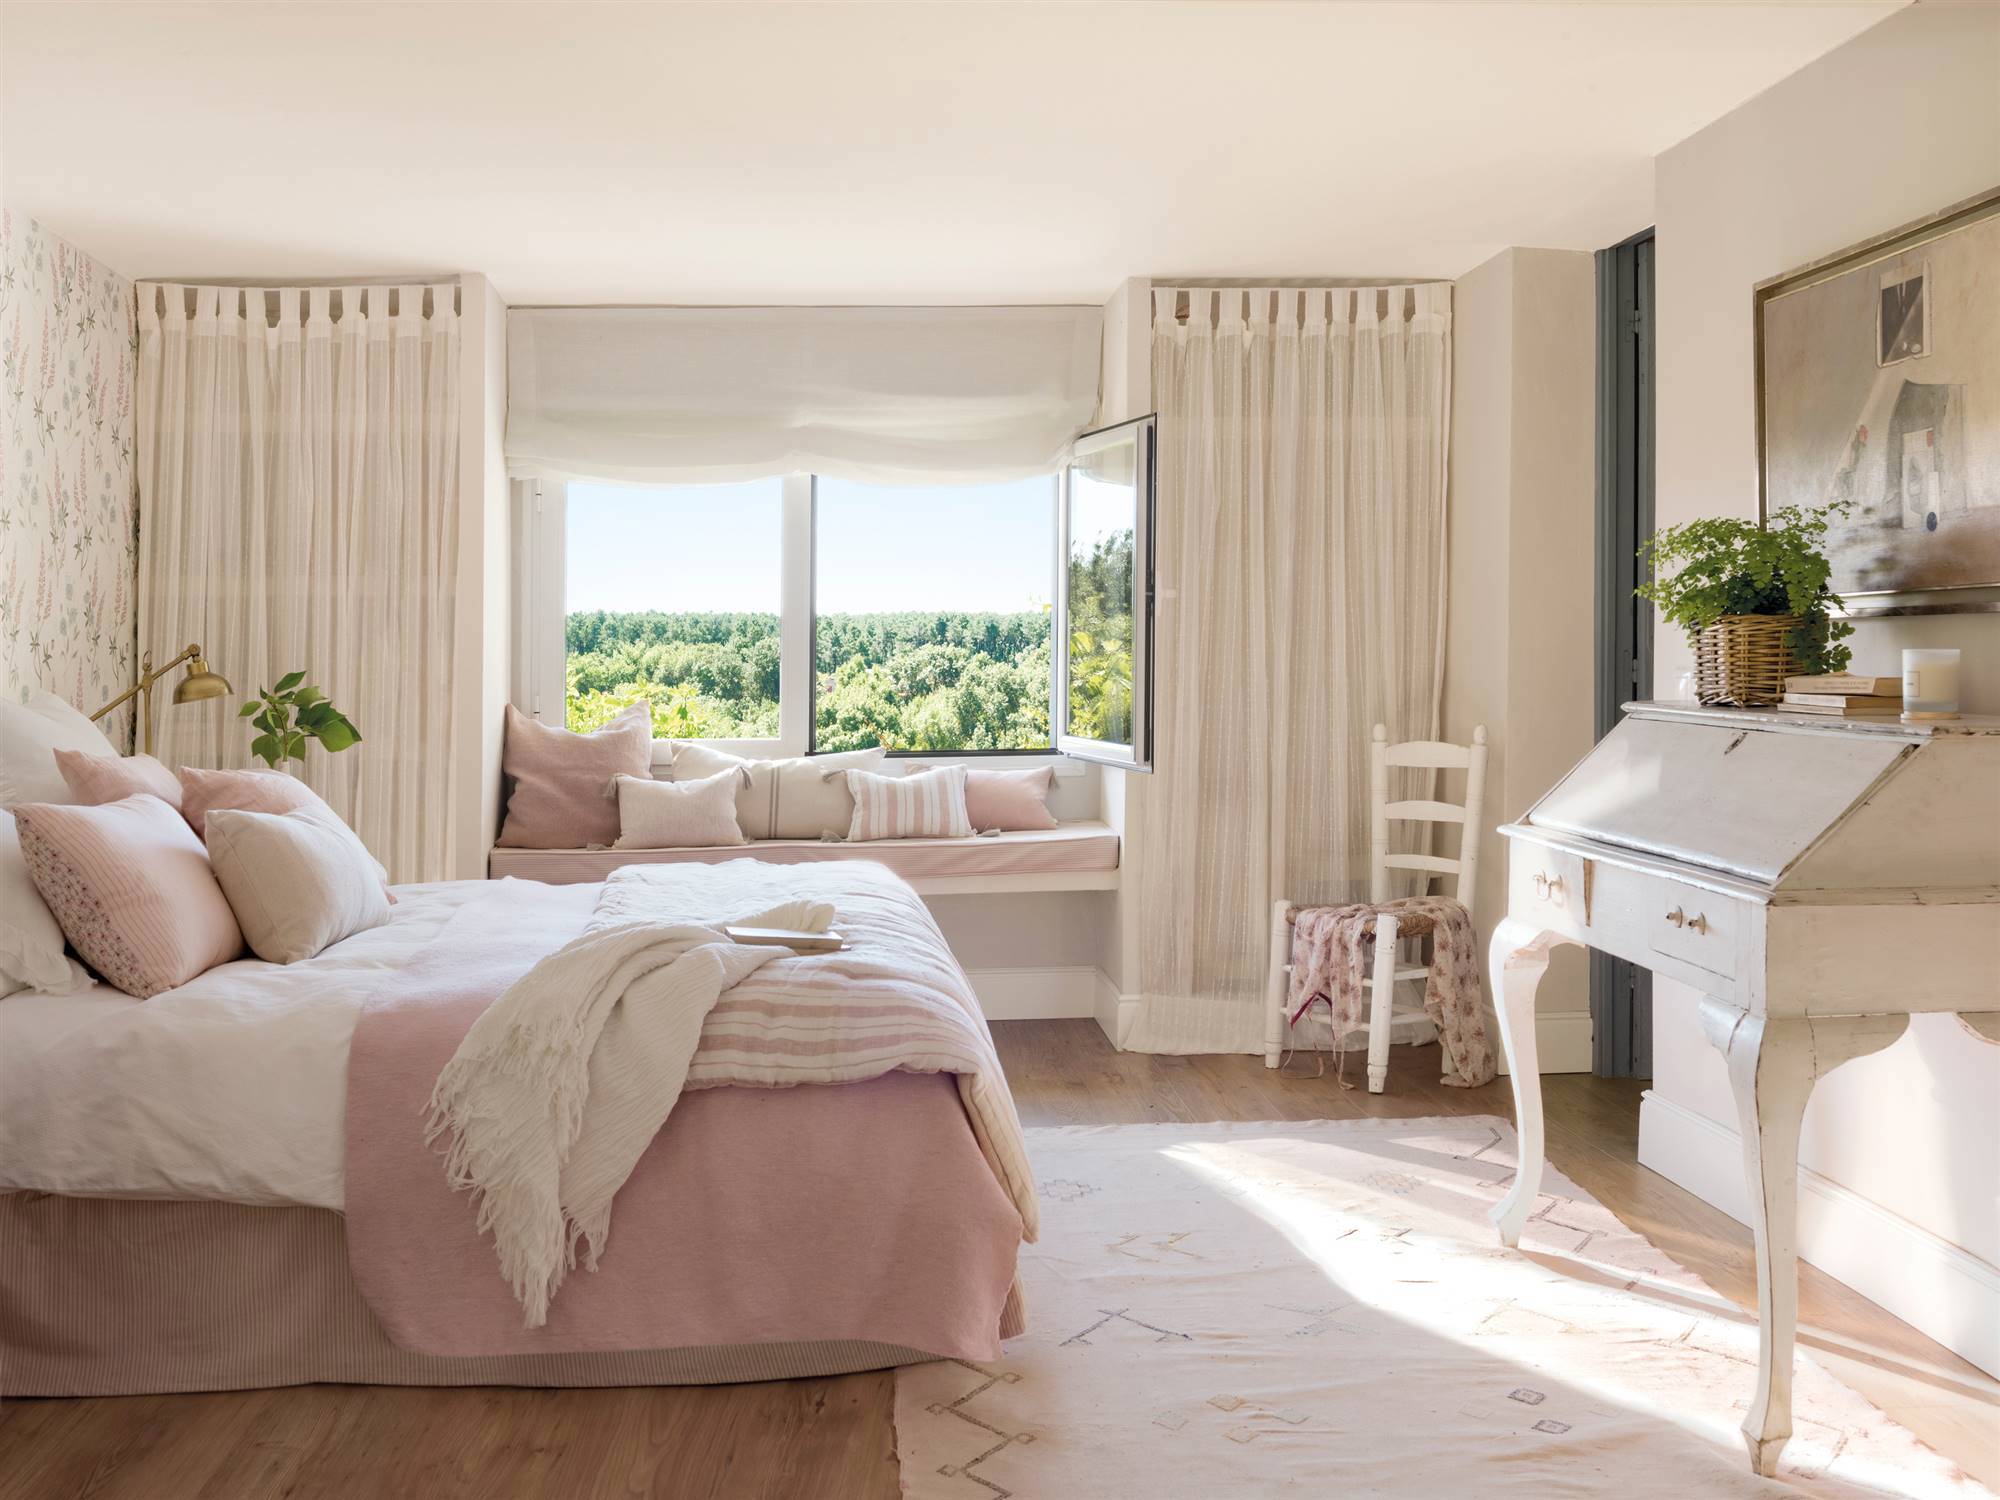 Dormitorio de estilo romántico con secreter vintage.